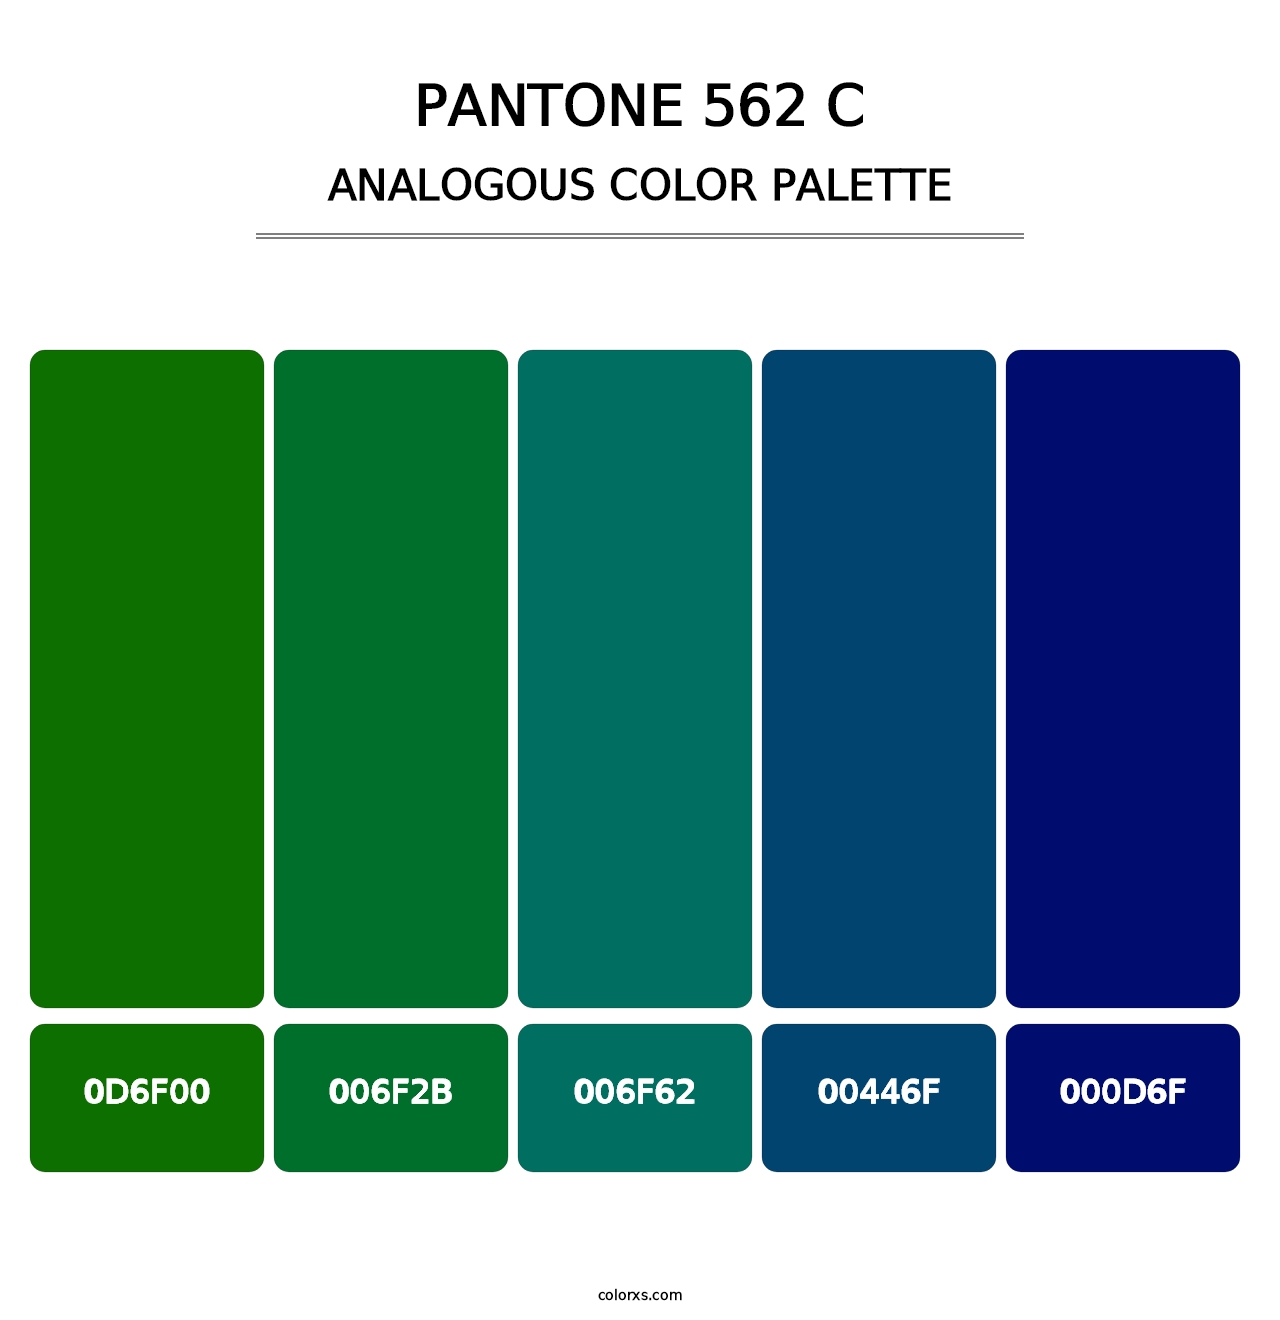 PANTONE 562 C - Analogous Color Palette